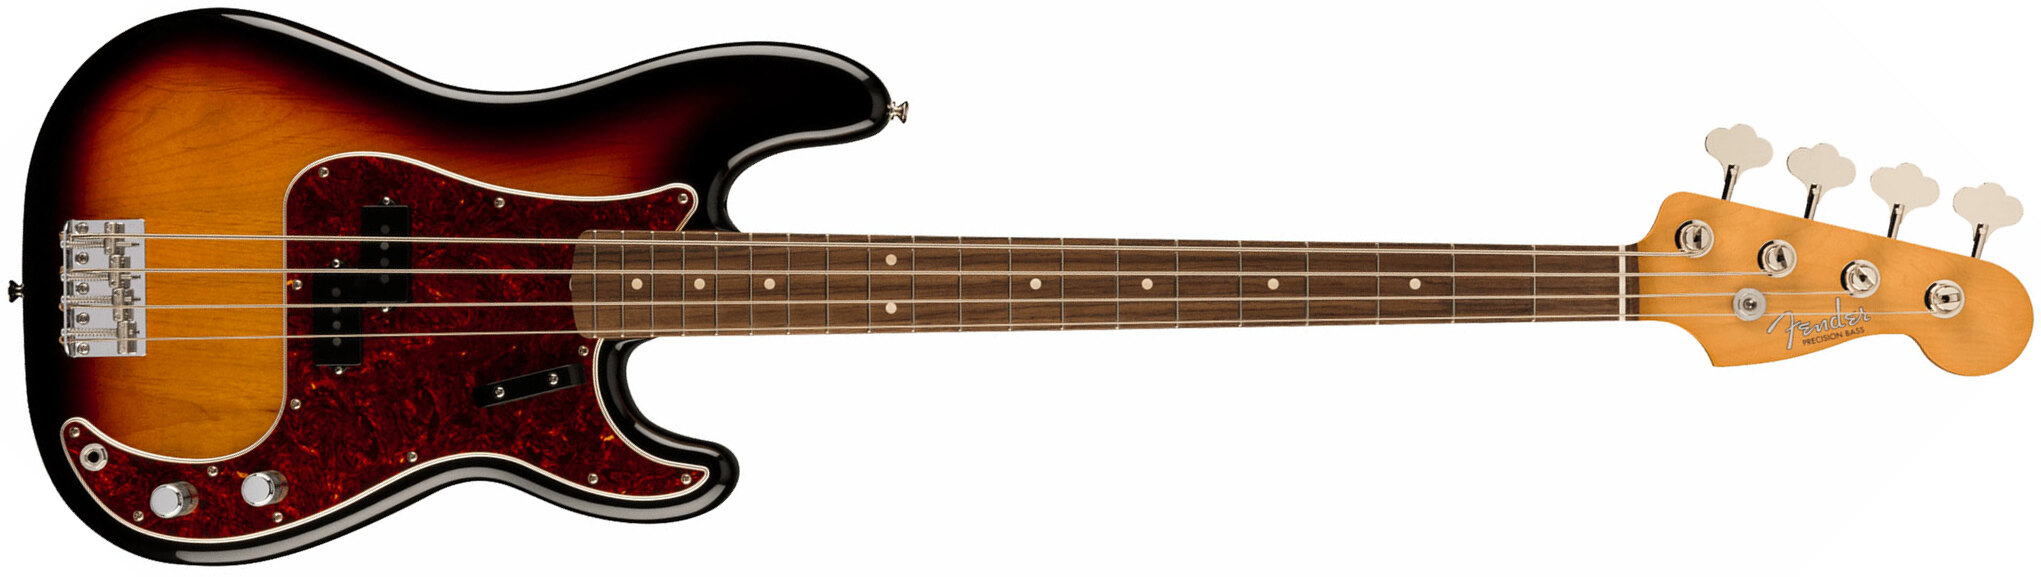 Fender Precision Bass 60s Vintera Ii Mex Rw - 3-color Sunburst - Basse Électrique Solid Body - Main picture